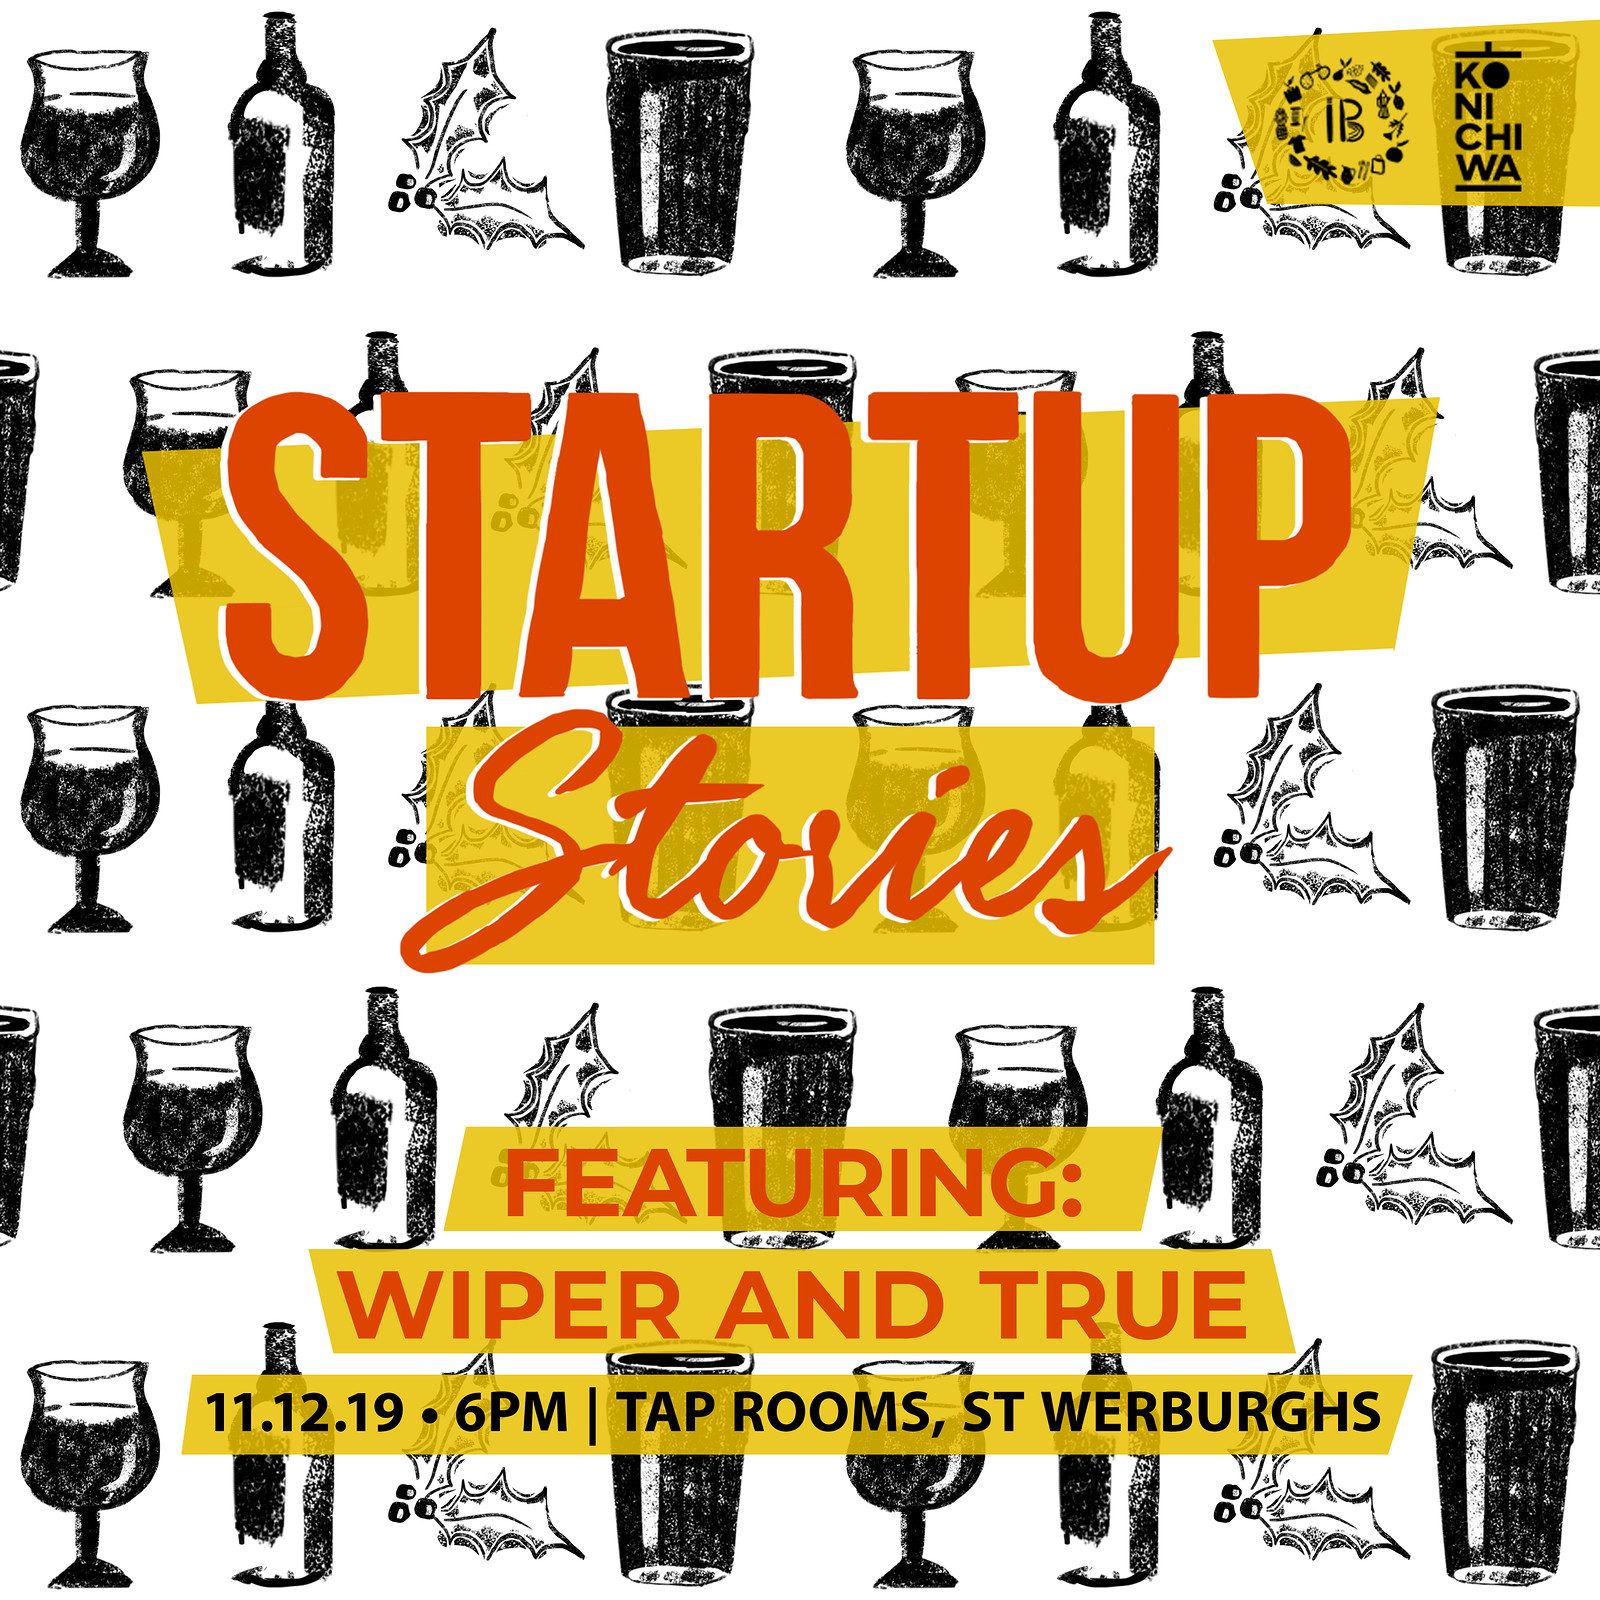 Startup Stories #10: Wiper & True at TAP ROOMS, 2-8 YORK STREET, ST WERBURGHS, BRISTOL